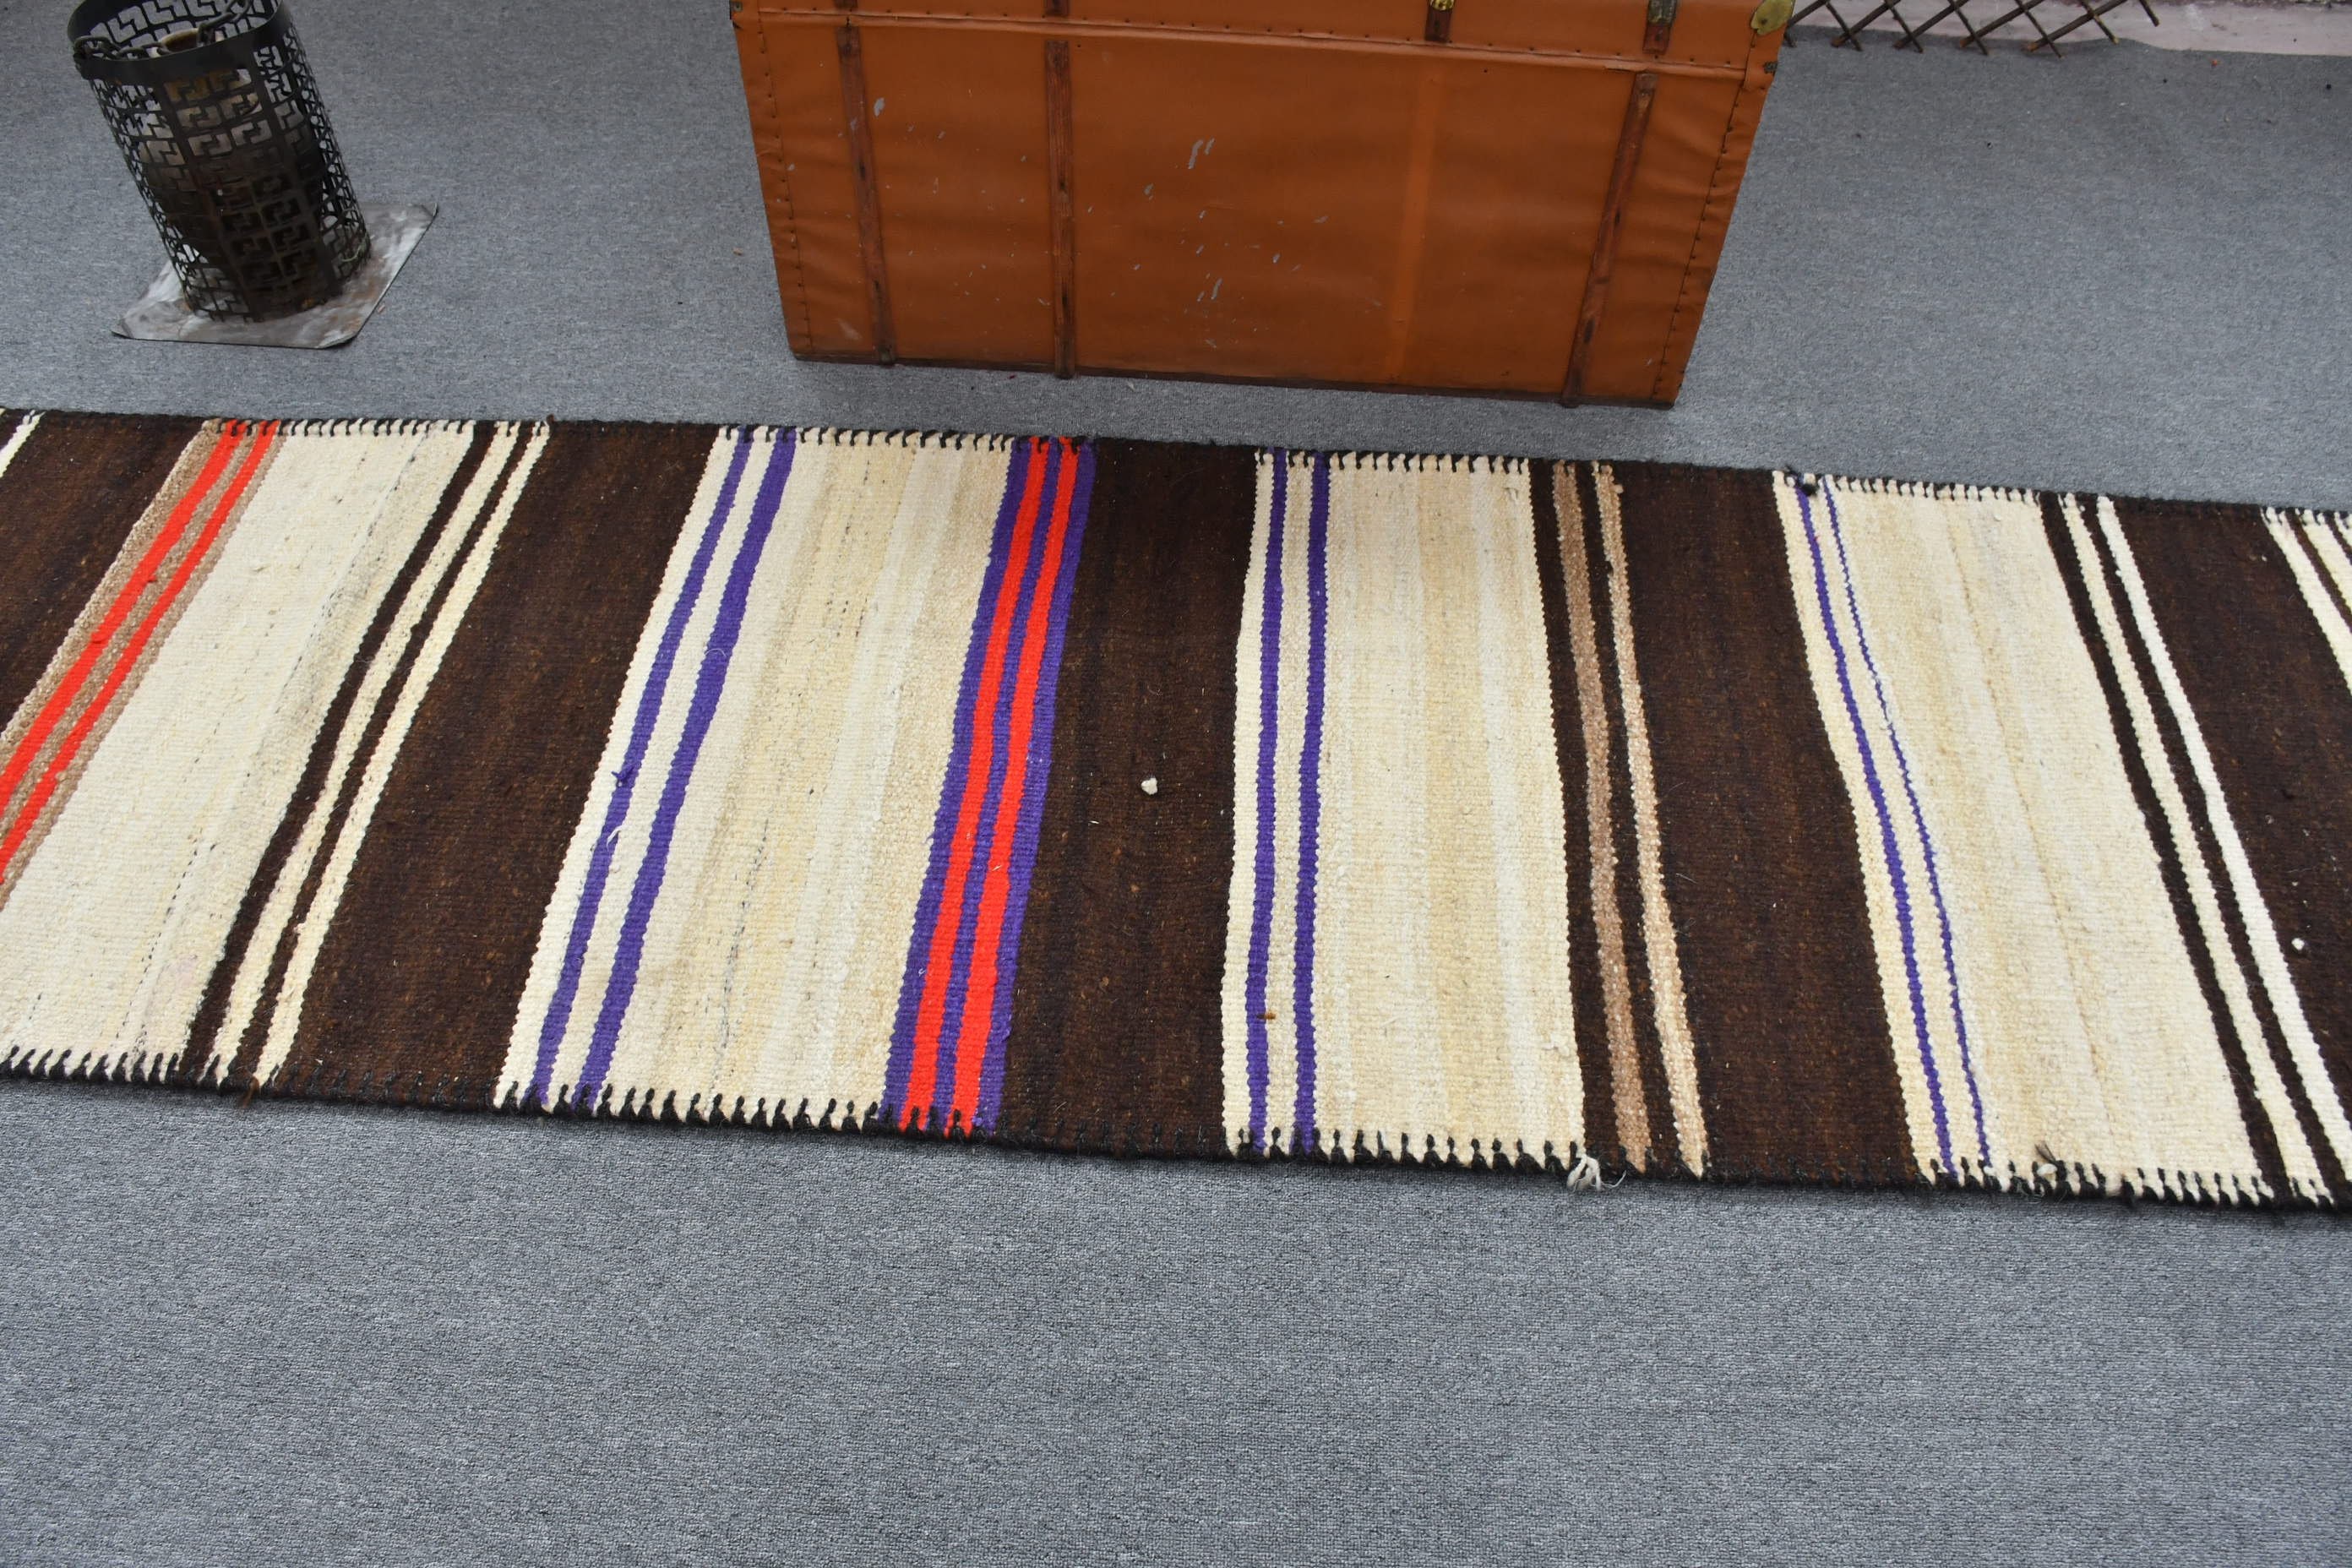 Wool Rugs, Vintage Rugs, Kitchen Rug, Ethnic Rug, Turkish Rugs, Rugs for Corridor, Colorful Rugs, Hallway Rug, 2.7x10.2 ft Runner Rug